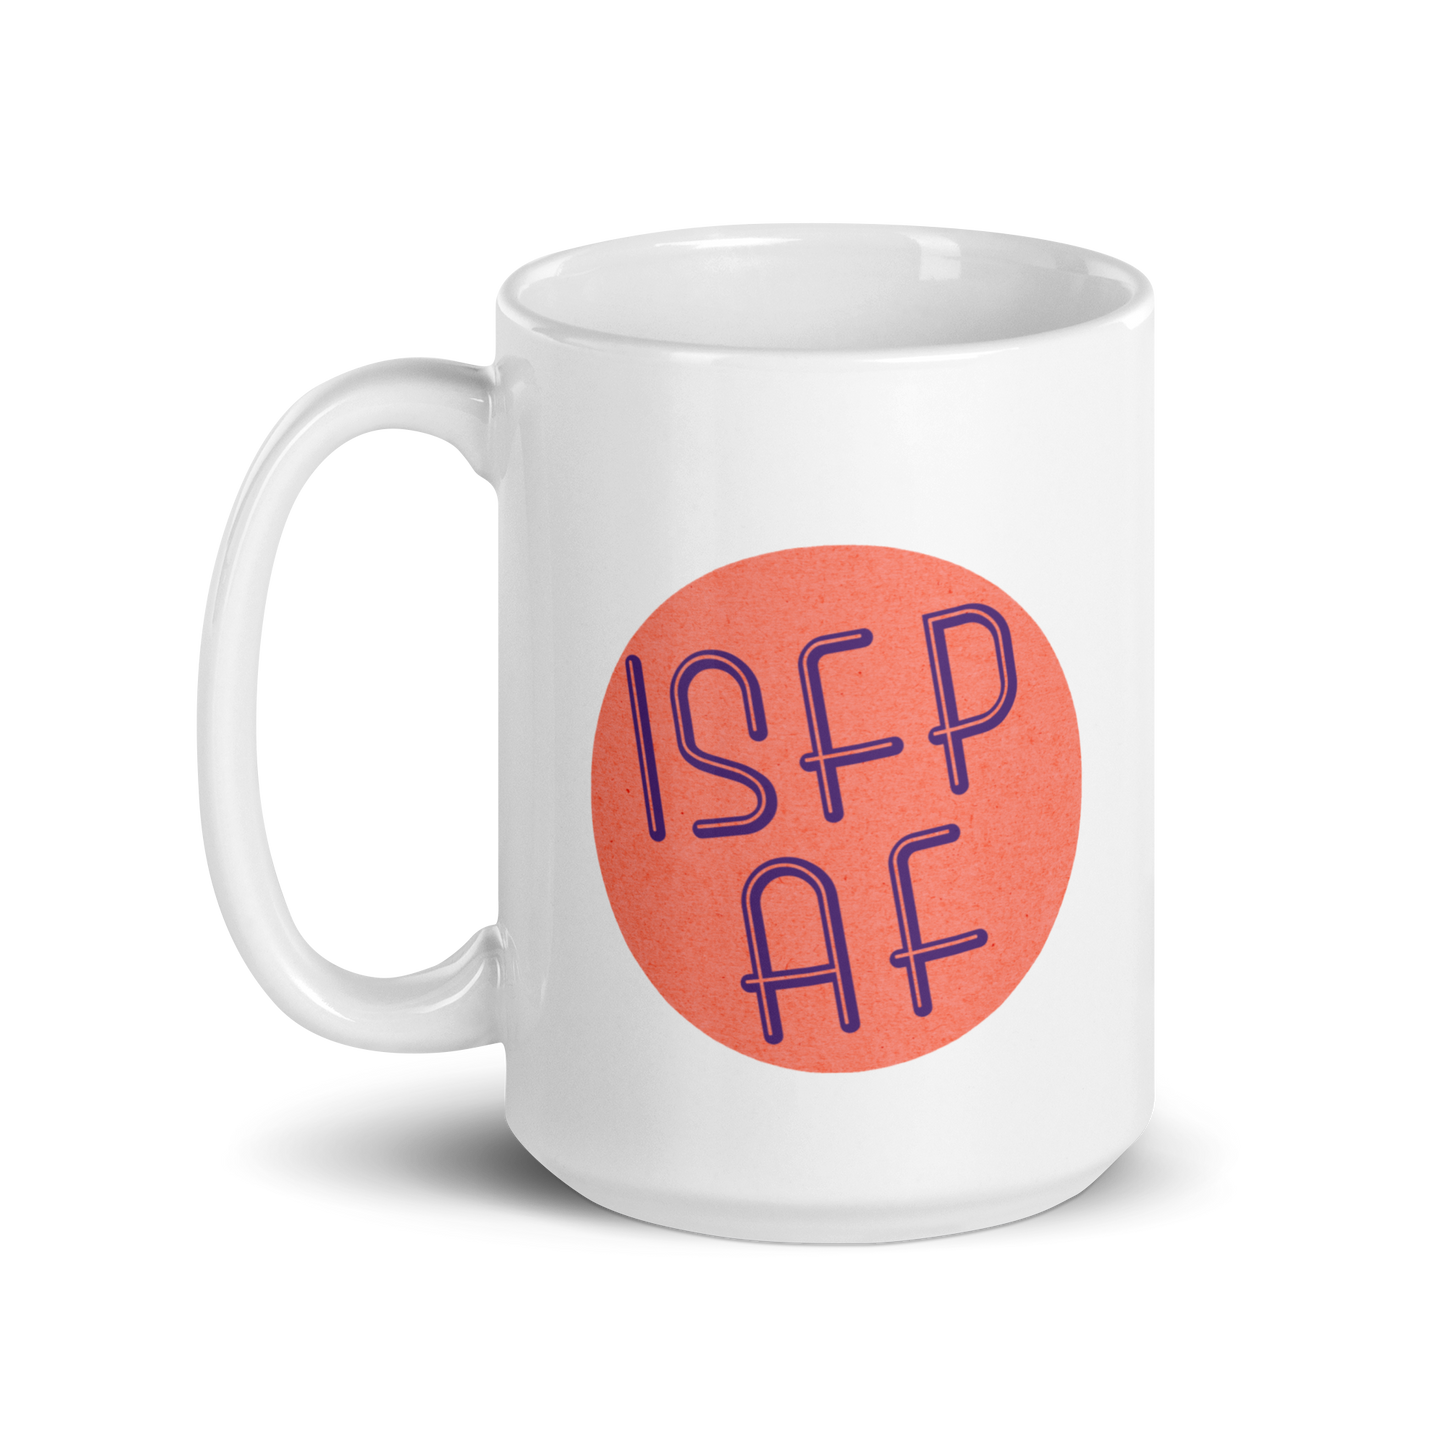 ISFP AF White Mug